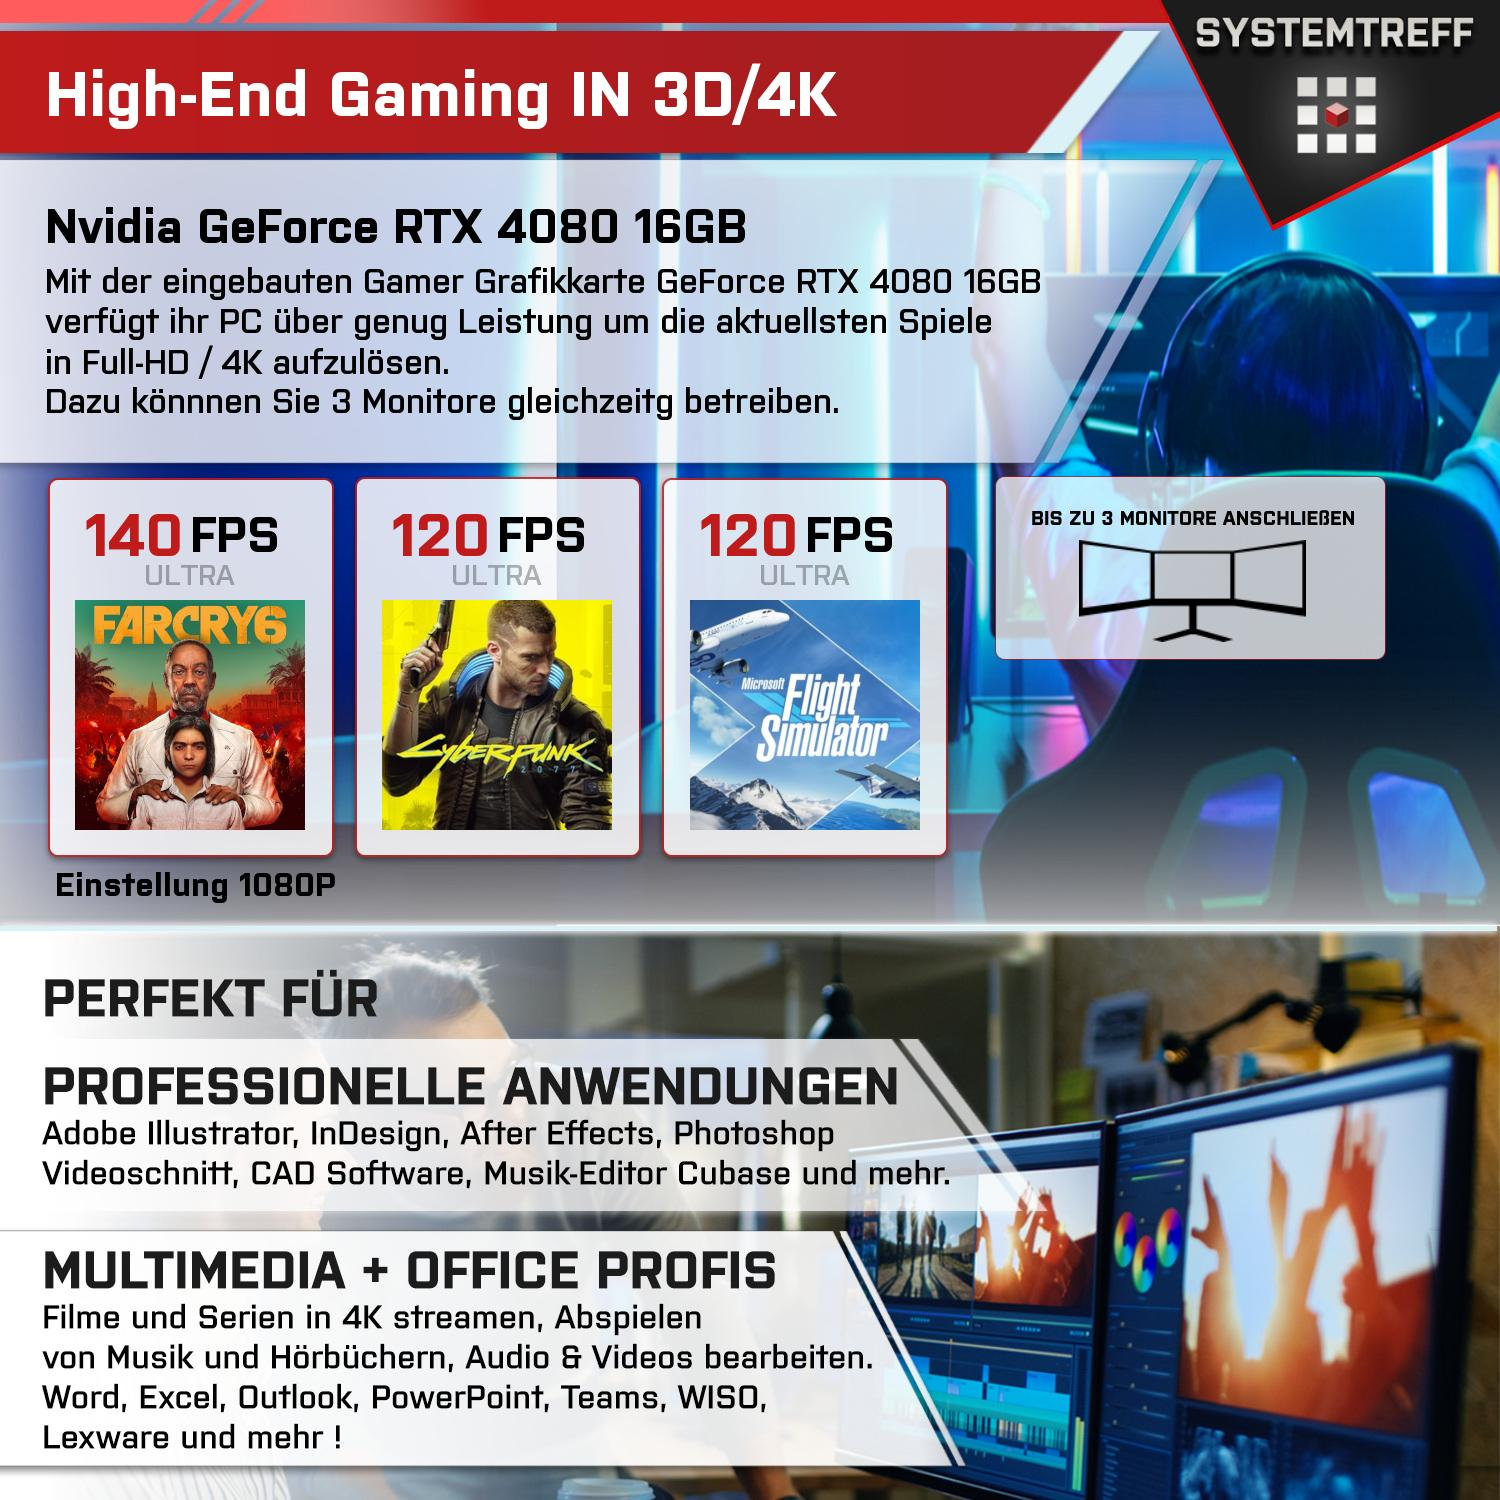 SYSTEMTREFF Gaming Komplett AMD Ryzen mit RAM, PC GB Komplett 16GB 7900X3D, mSSD, Nvidia 9 GB 4080 16 2000 Prozessor, GB GeForce 32 7900X3D RTX GDDR6